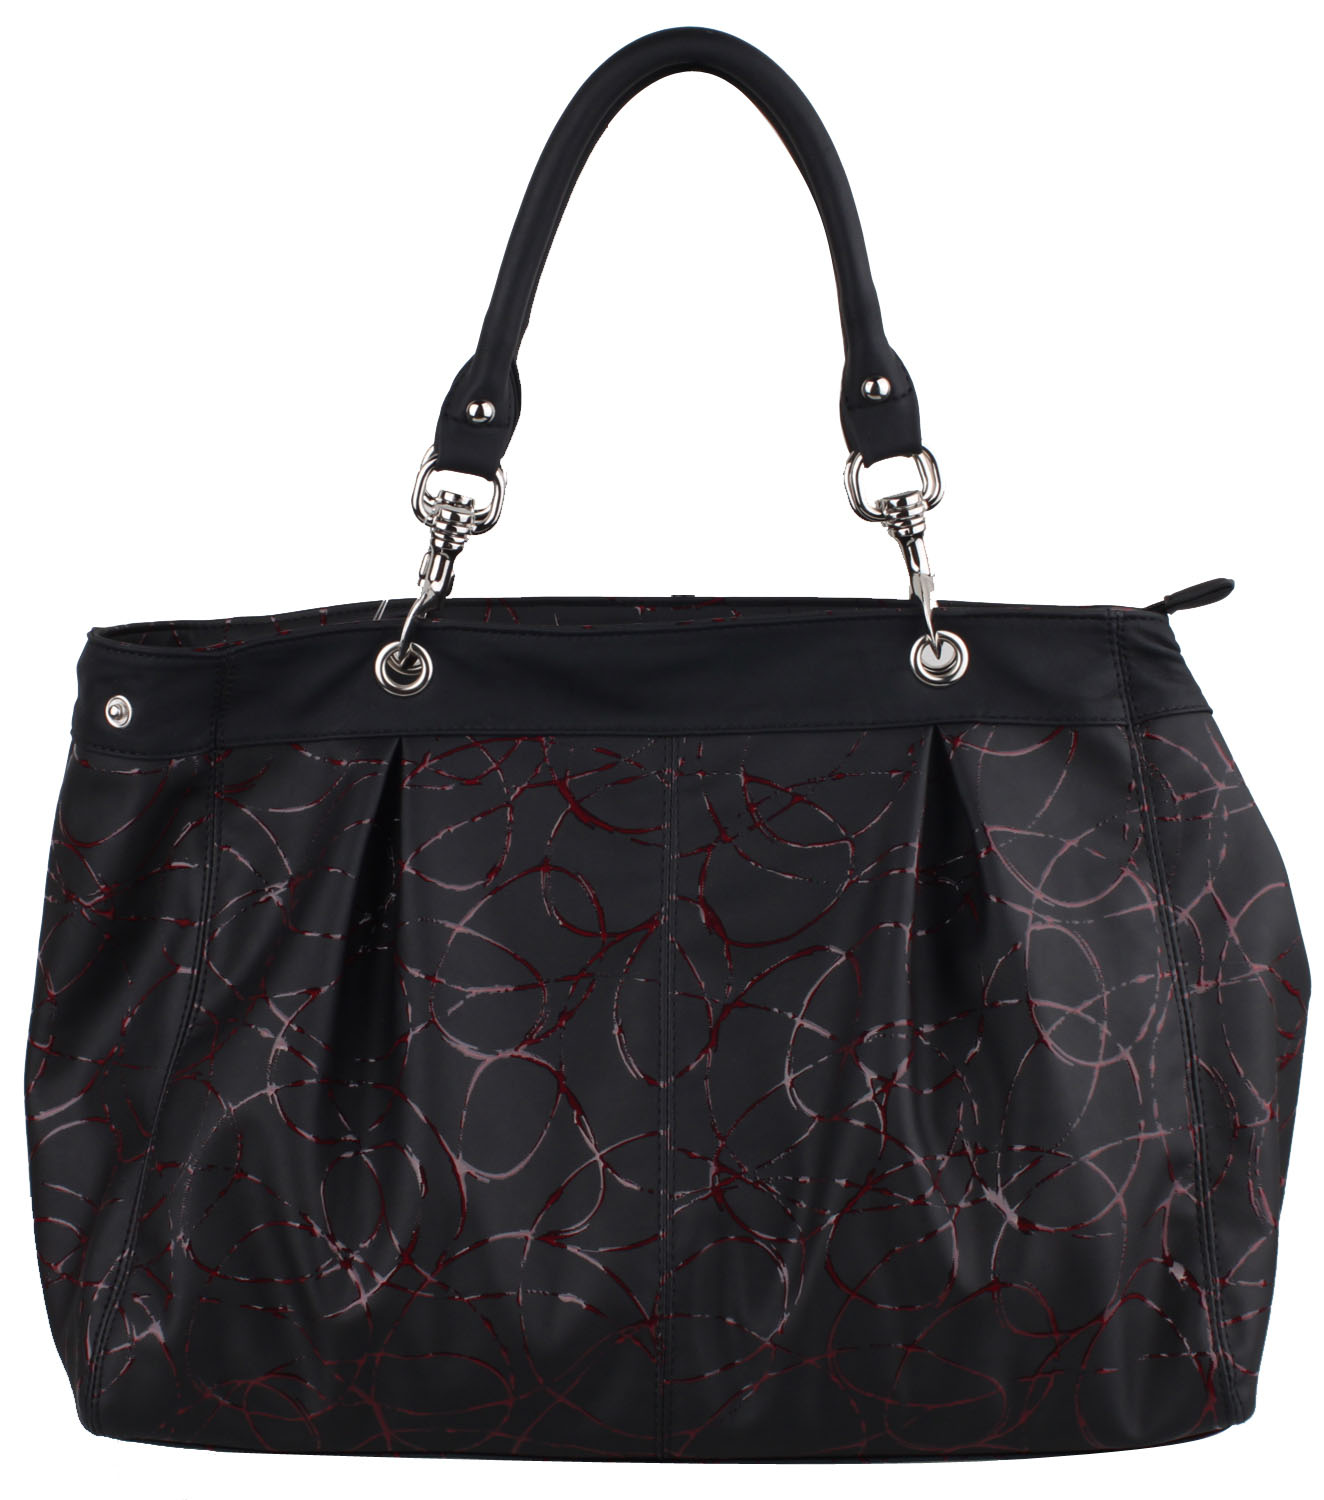 Fashion Ladies' Tote Bag (QL009-03)